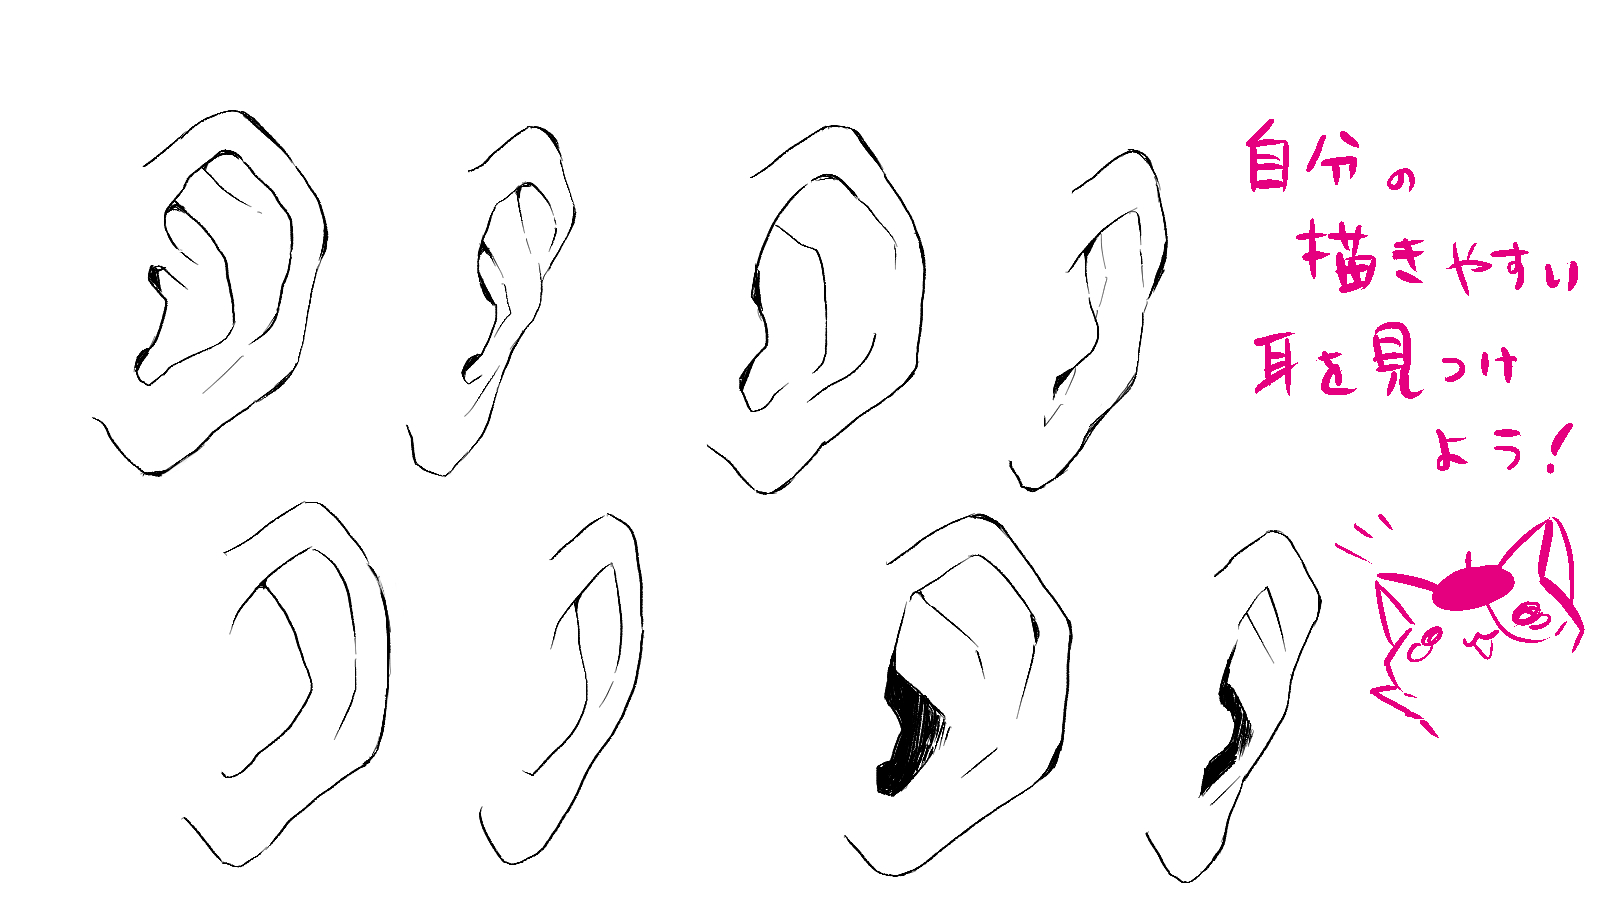 正面的耳朵怎么画?简单描绘各种角度耳朵的画法